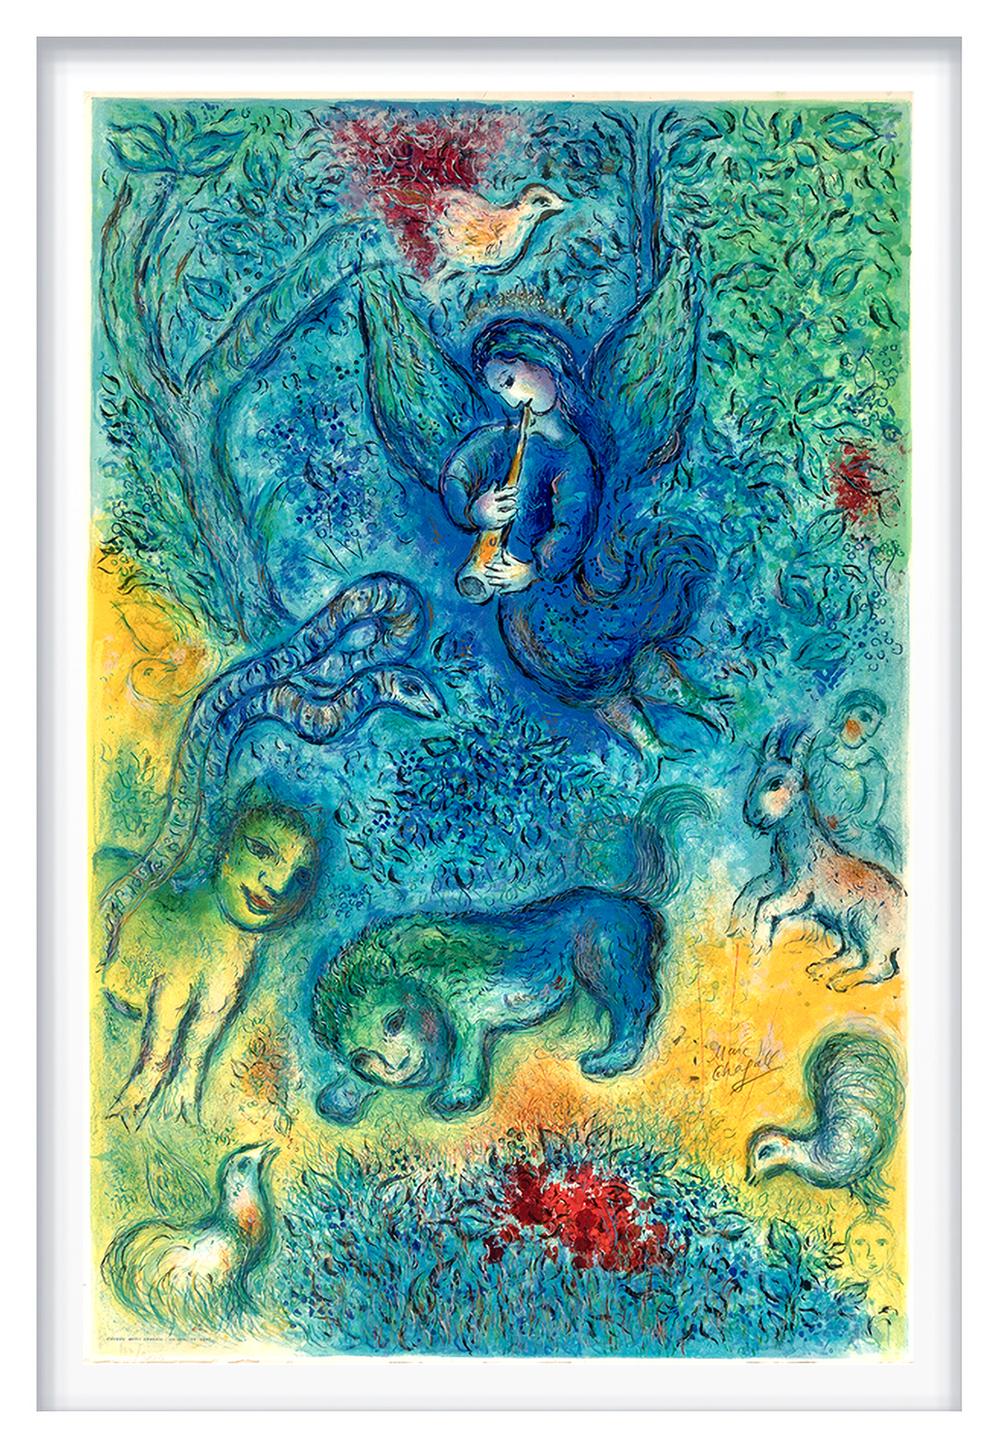 La flûte enchantée (The Magic Flute) - Print by (after) Marc Chagall